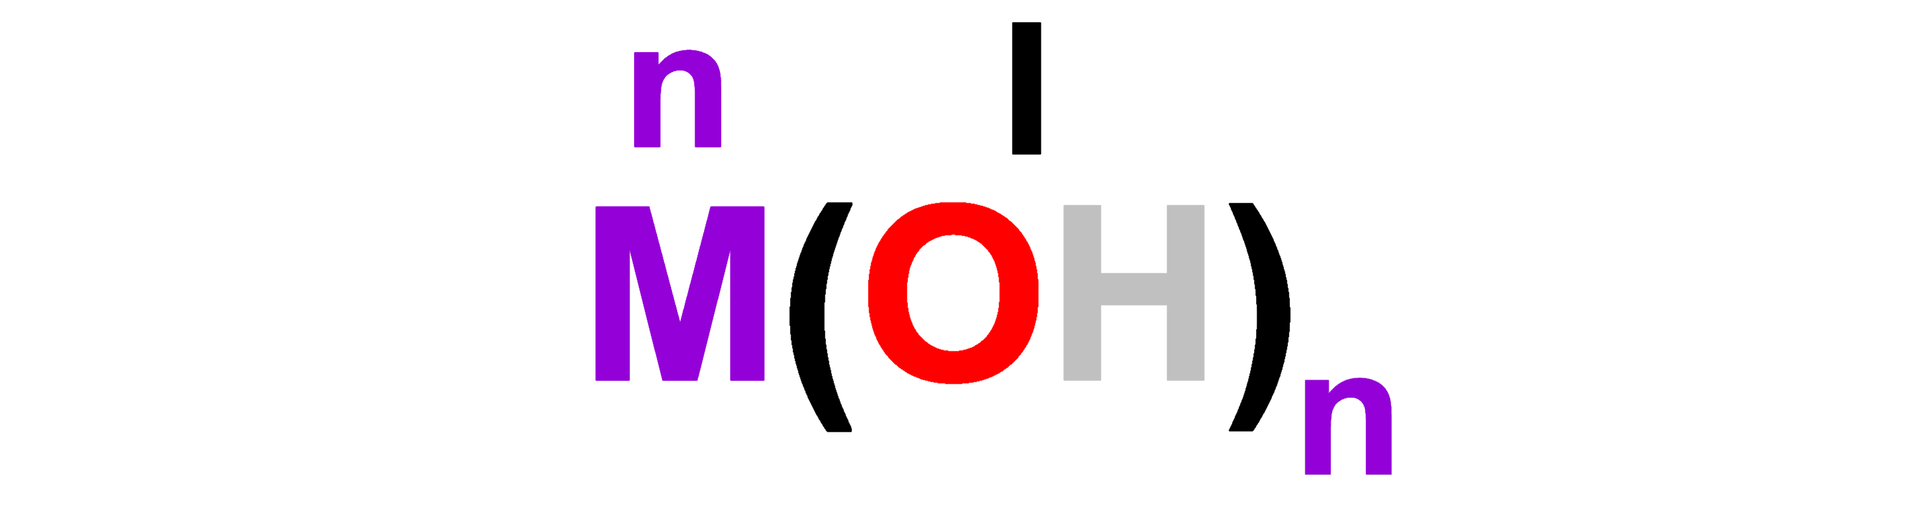 Grafika przedstawia wzór ogólny wodorotlenków. M otwarcie nawiasu OH zamknięcie nawiasu indeks dolny małe n koniec indeksu. Nad dużą literą M została zapisana mała litera n oznaczająca wartościowość metalu, a nad grupą wodorotlenową znajduje się rzymska cyfra jeden. Obie litery n oraz litera M zostały oznaczone kolorem fioletowym. Symbol tlenu został oznaczony kolorem czerwonym, a symbol wodoru kolorem szarym. 